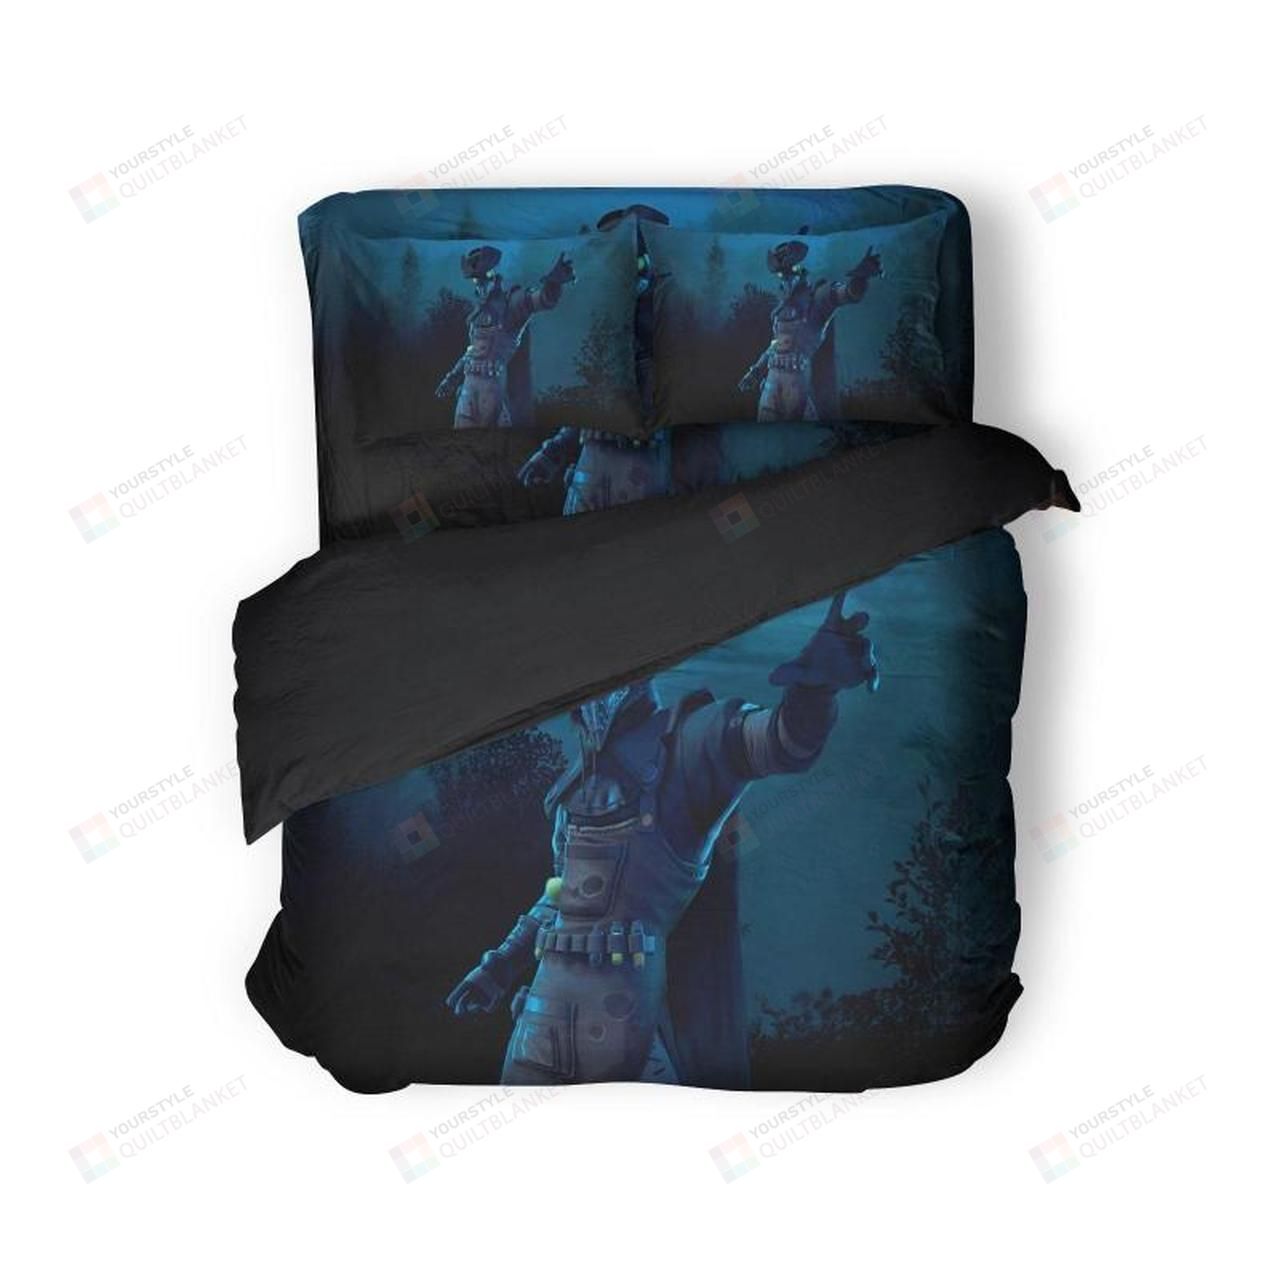 Fortnite Season 7 Gameplay Bedding Set (Duvet Cover & Pillow Cases)